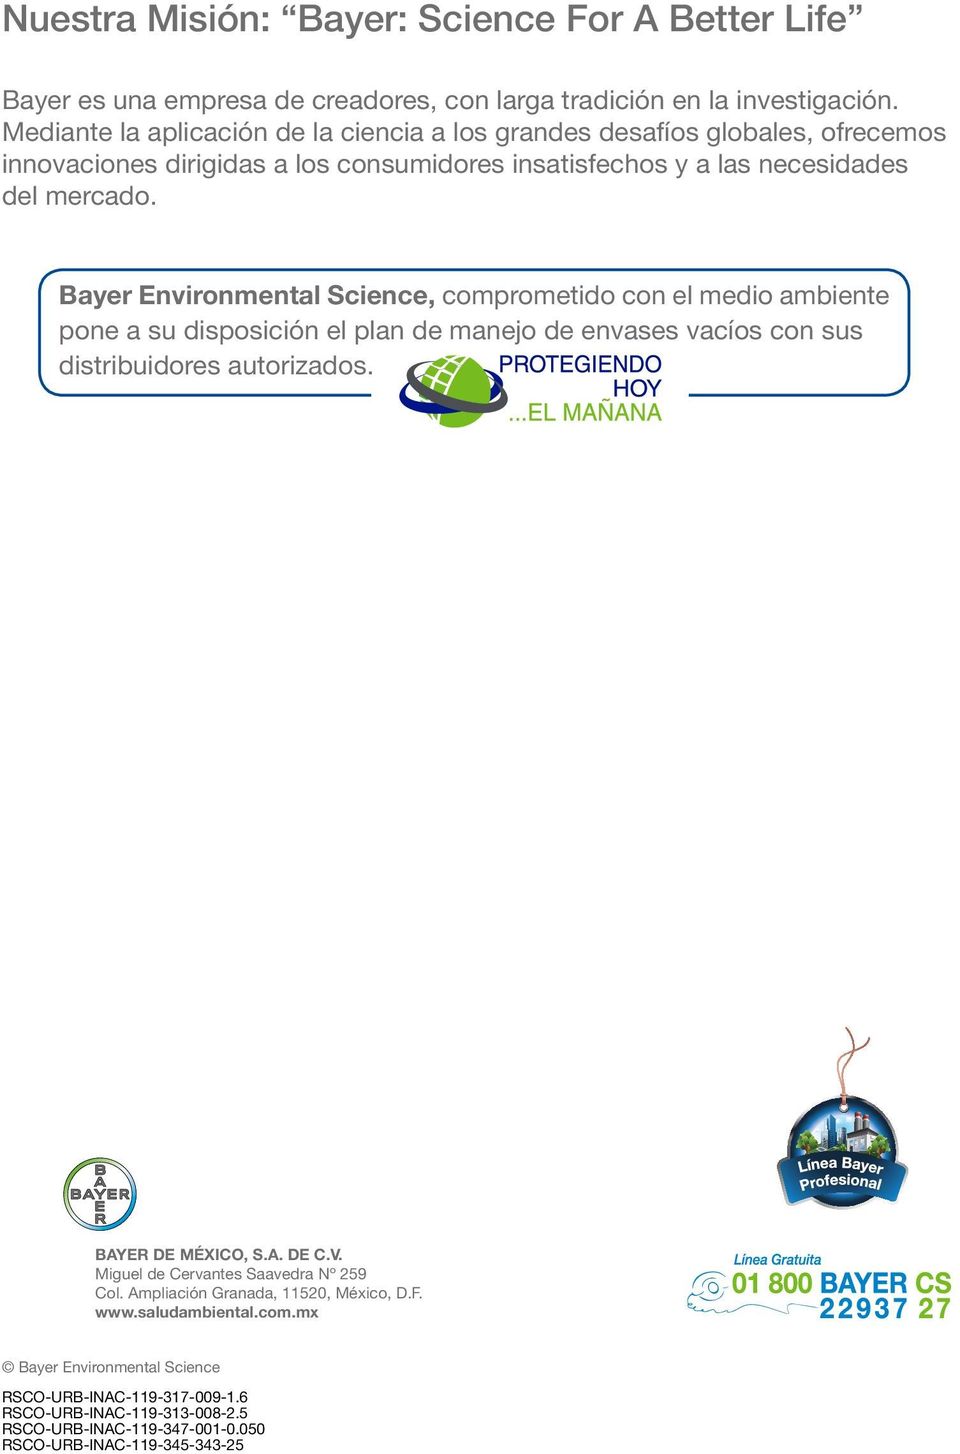 Bayer Environmental Science, comprometido con el medio ambiente pone a su disposición el plan de manejo de envases vacíos con sus distribuidores autorizados. BAYER DE MÉXICO, S.A. DE C.